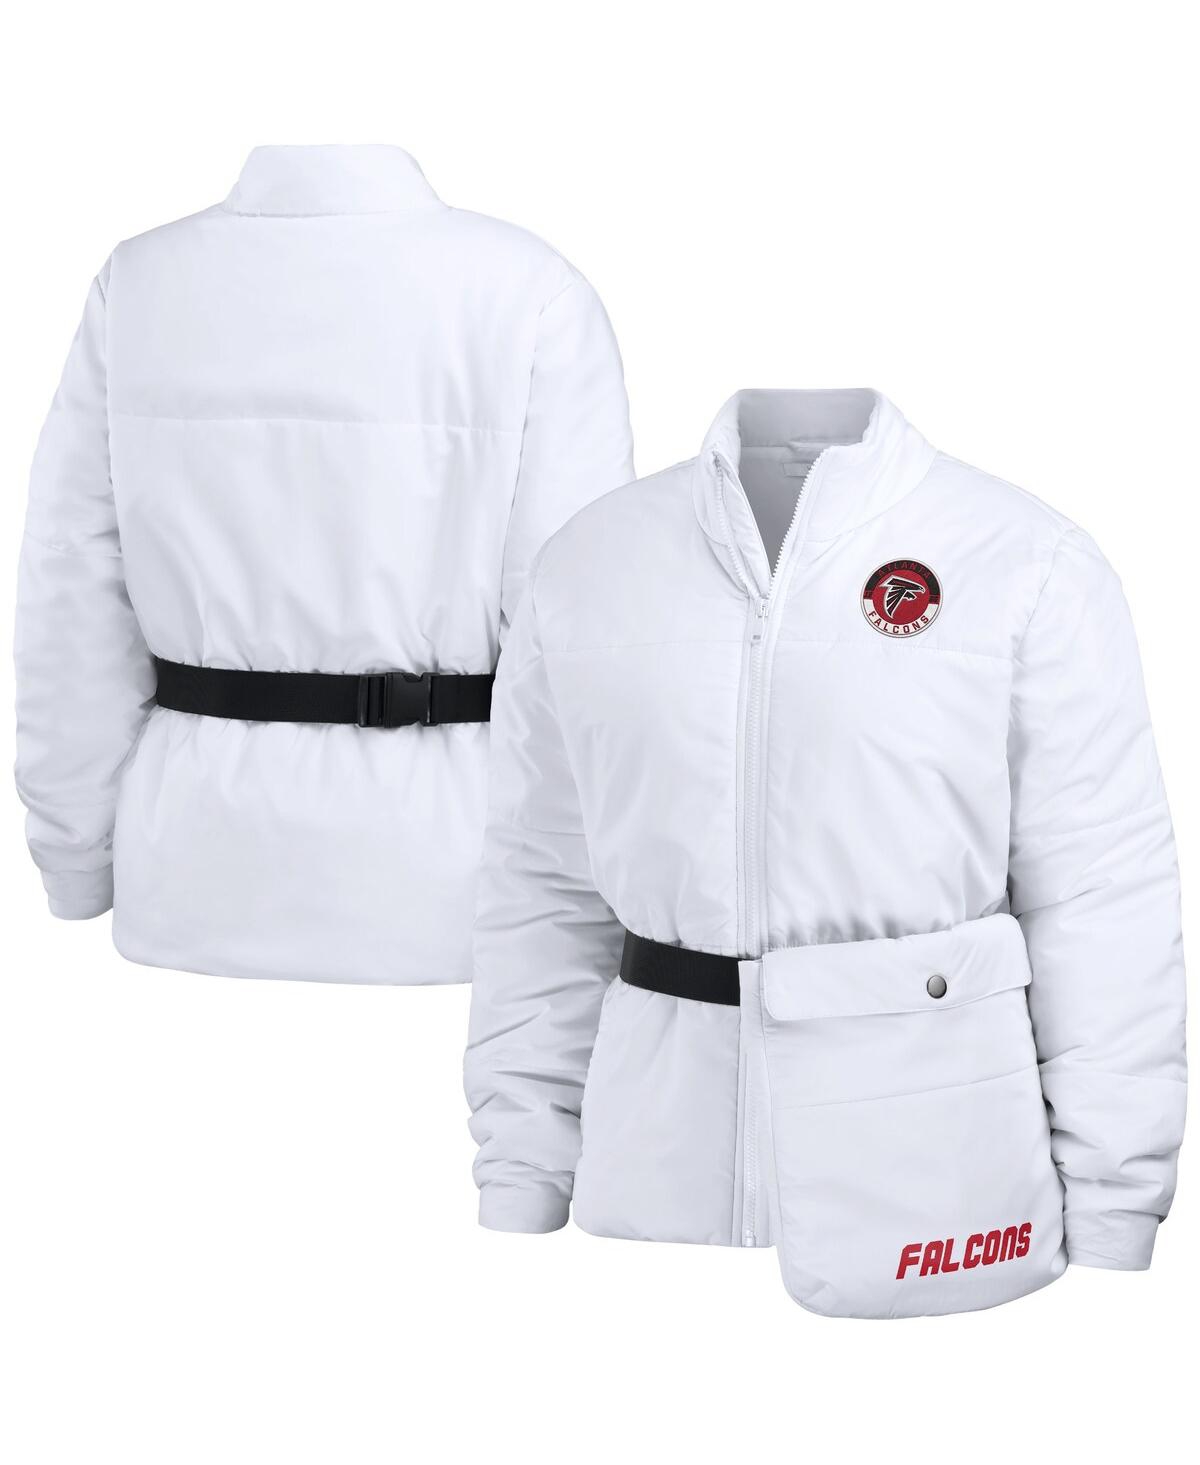 Women's Wear by Erin Andrews White Atlanta Falcons Packaway Full-Zip Puffer Jacket - White